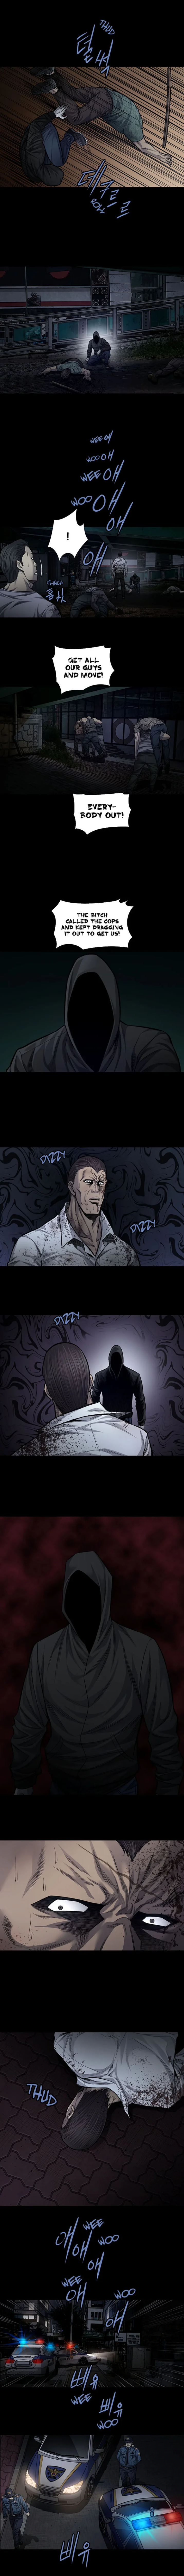 Vigilante Chapter 71 - Page 2